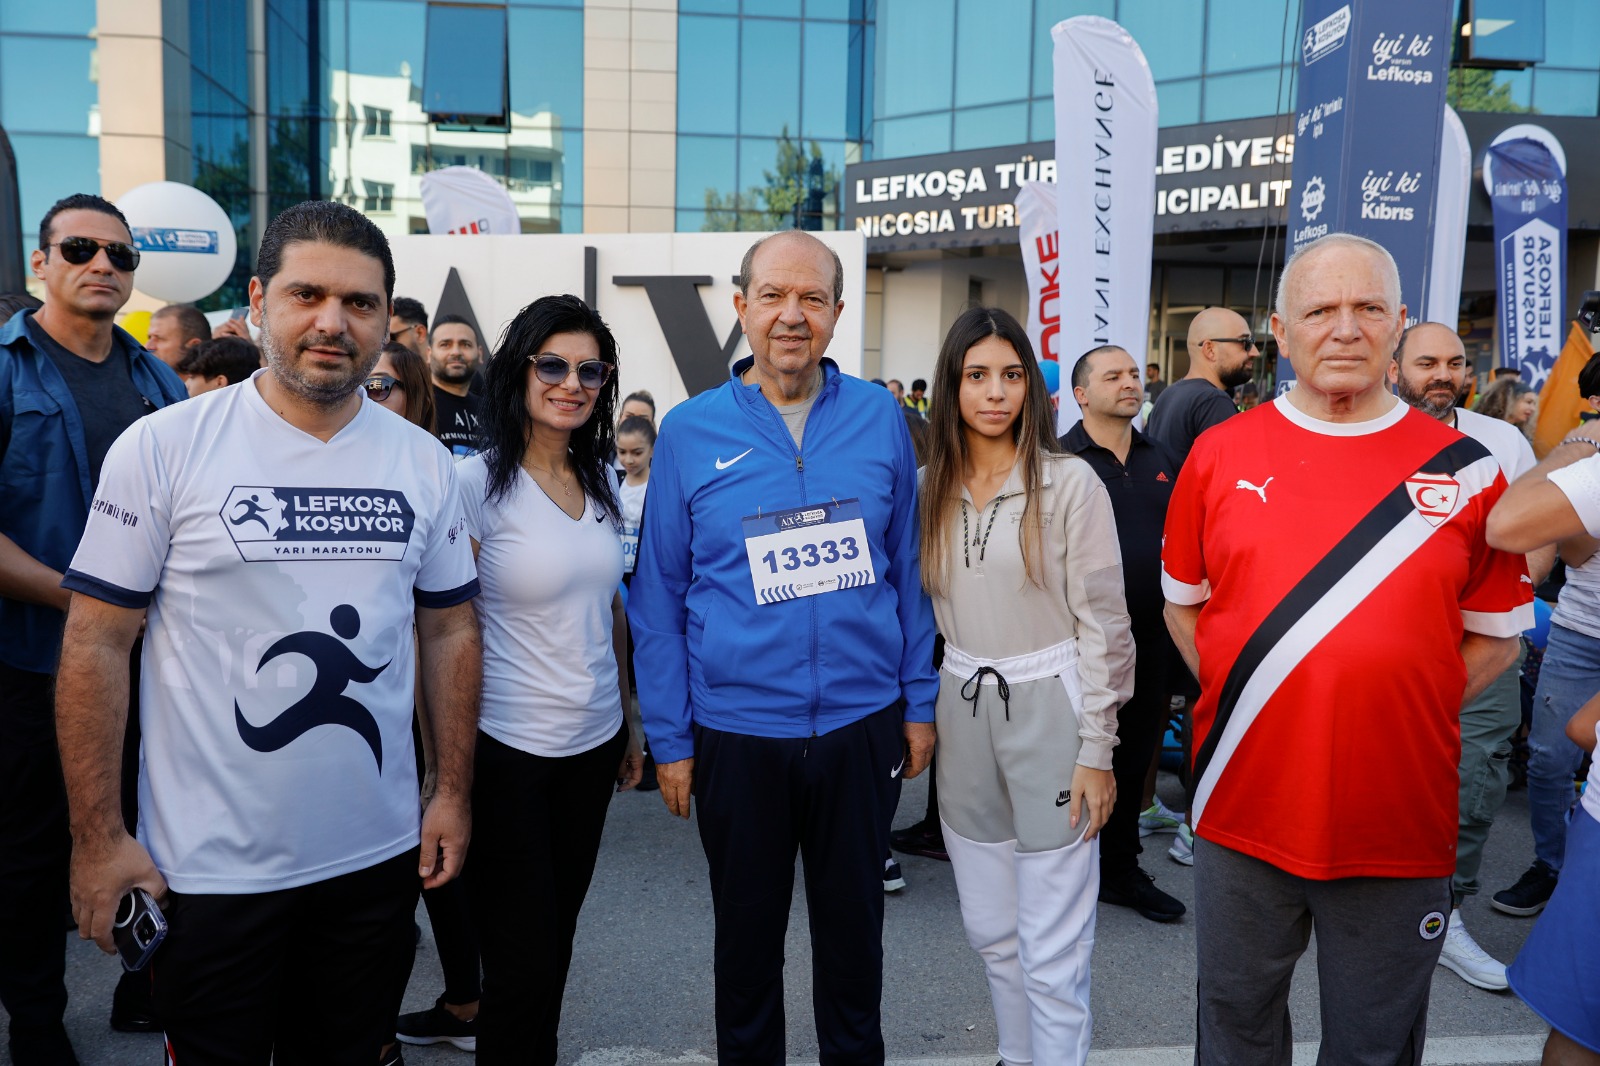 Cumhurbaşkanı Tatar, 10. Lefkoşa Maratonu’na katıldı; “Bu etkinlik, KKTC’de sosyal hayatın ne kadar geliştiğinin bir göstergesidir”